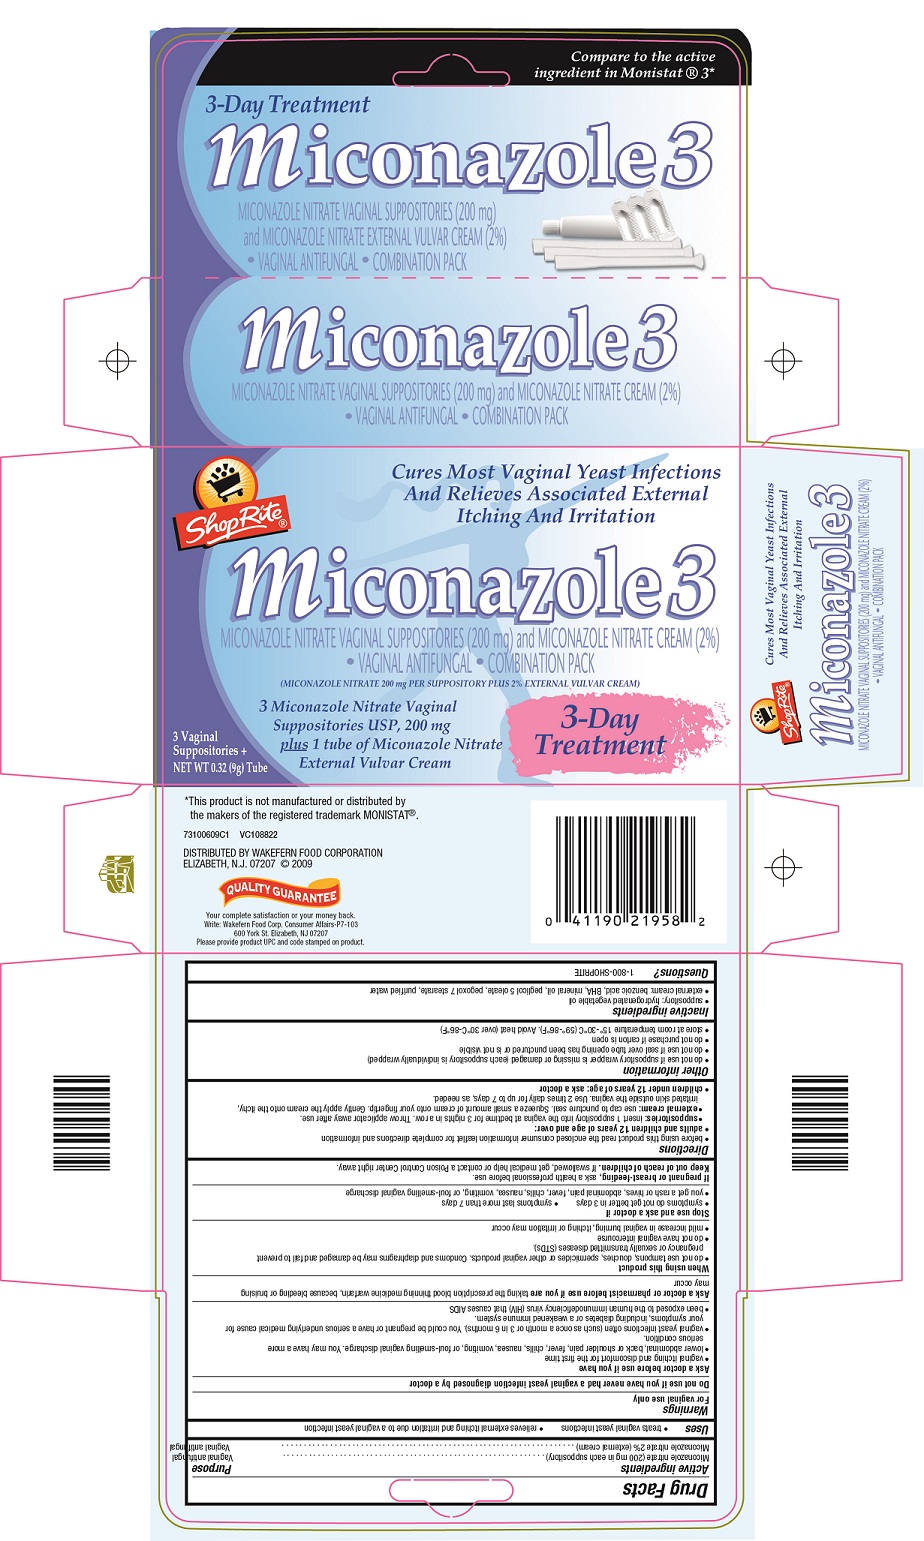 shoprite miconazole carton1